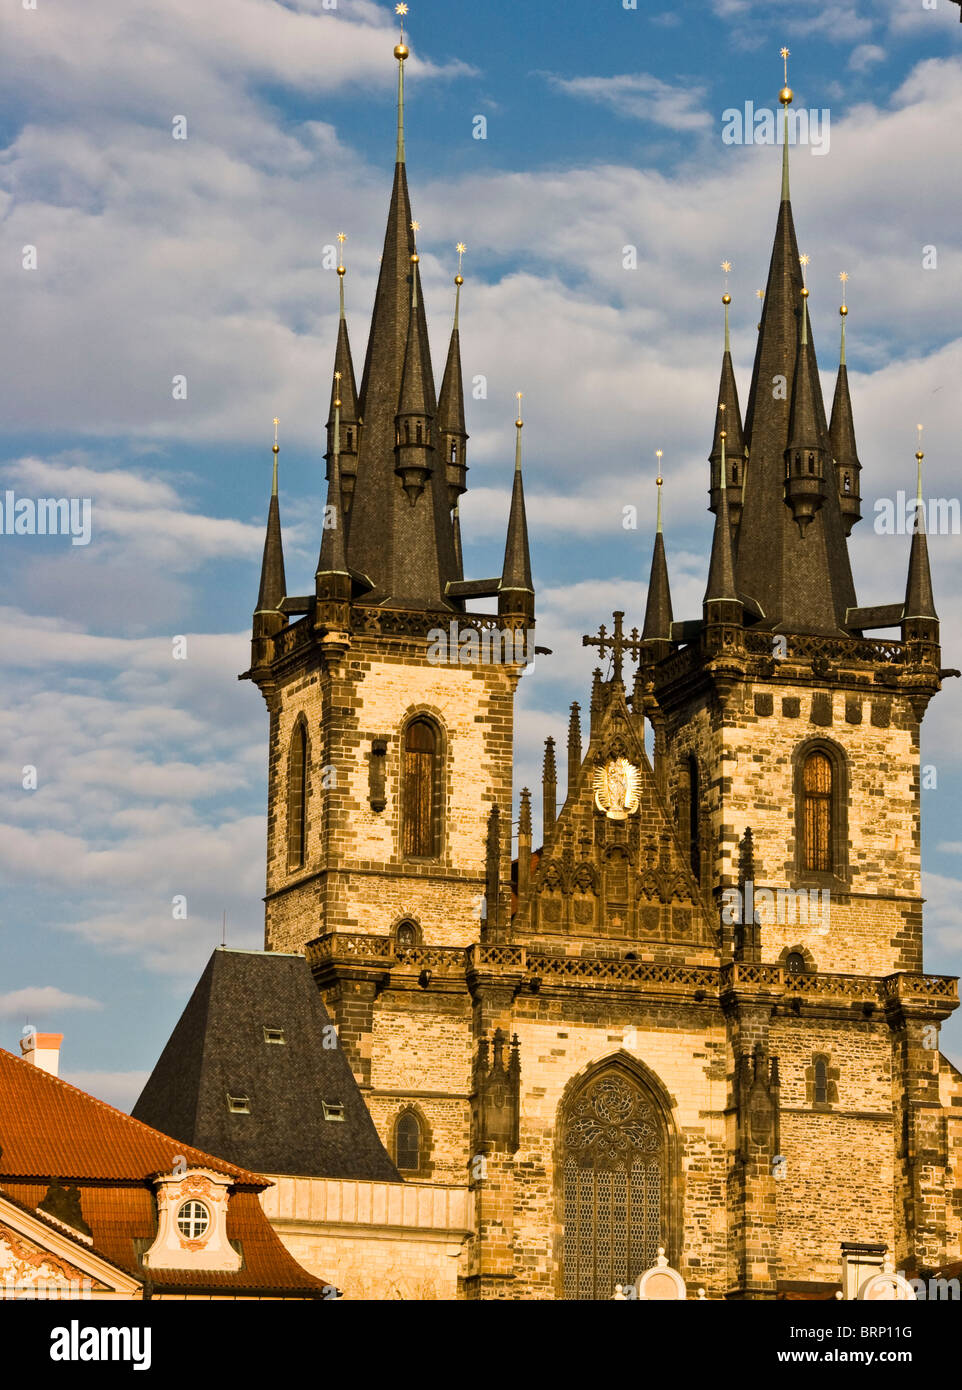 Iglesia de Nuestra Señora antes de Tyn Praga República Checa Europa Foto de stock